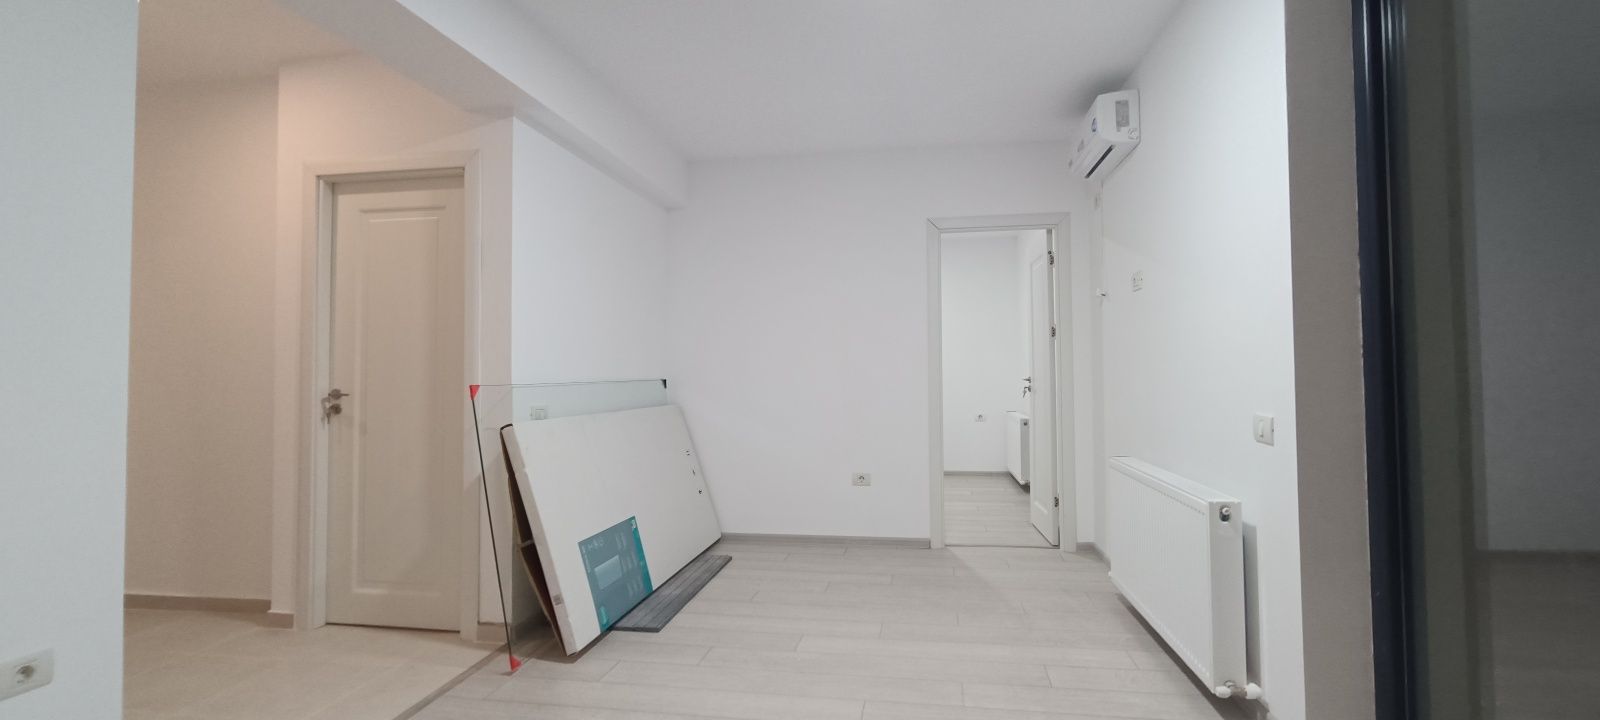 Mamaia Nord Navodari bloc locuit studio 2cam lift parcare intabulare